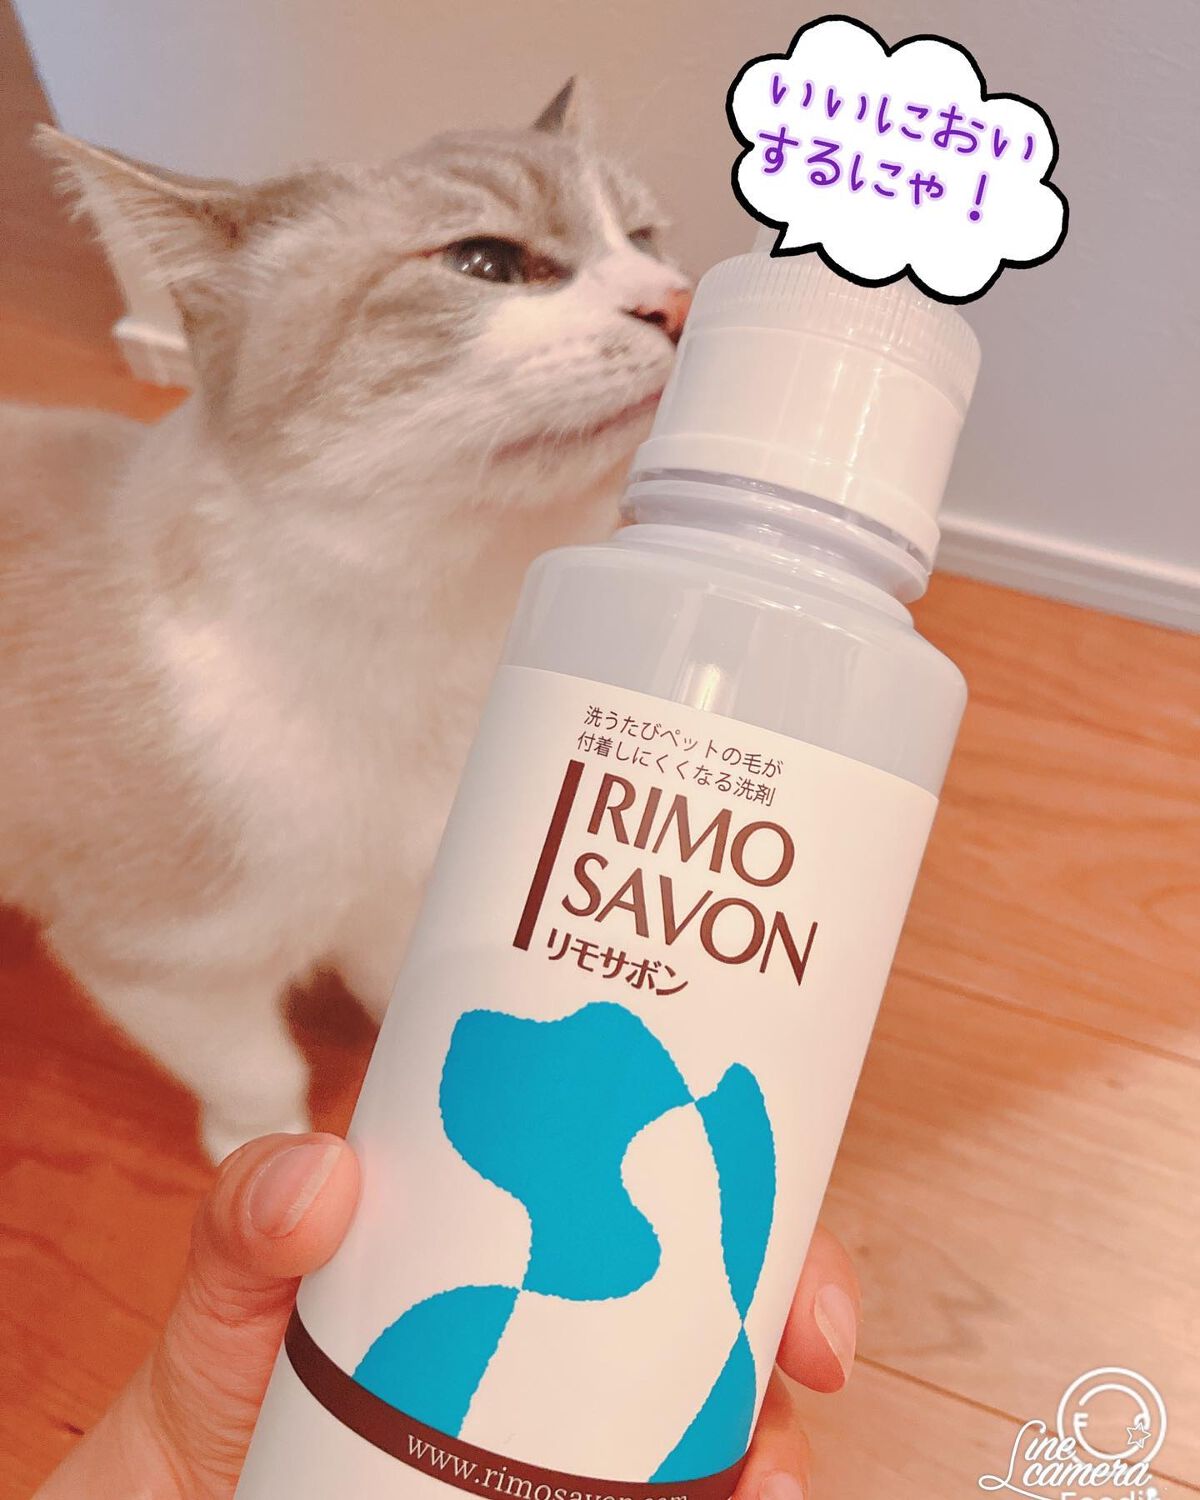 RIMO SAVON リモサボン【2本セット】　ペットの毛対策